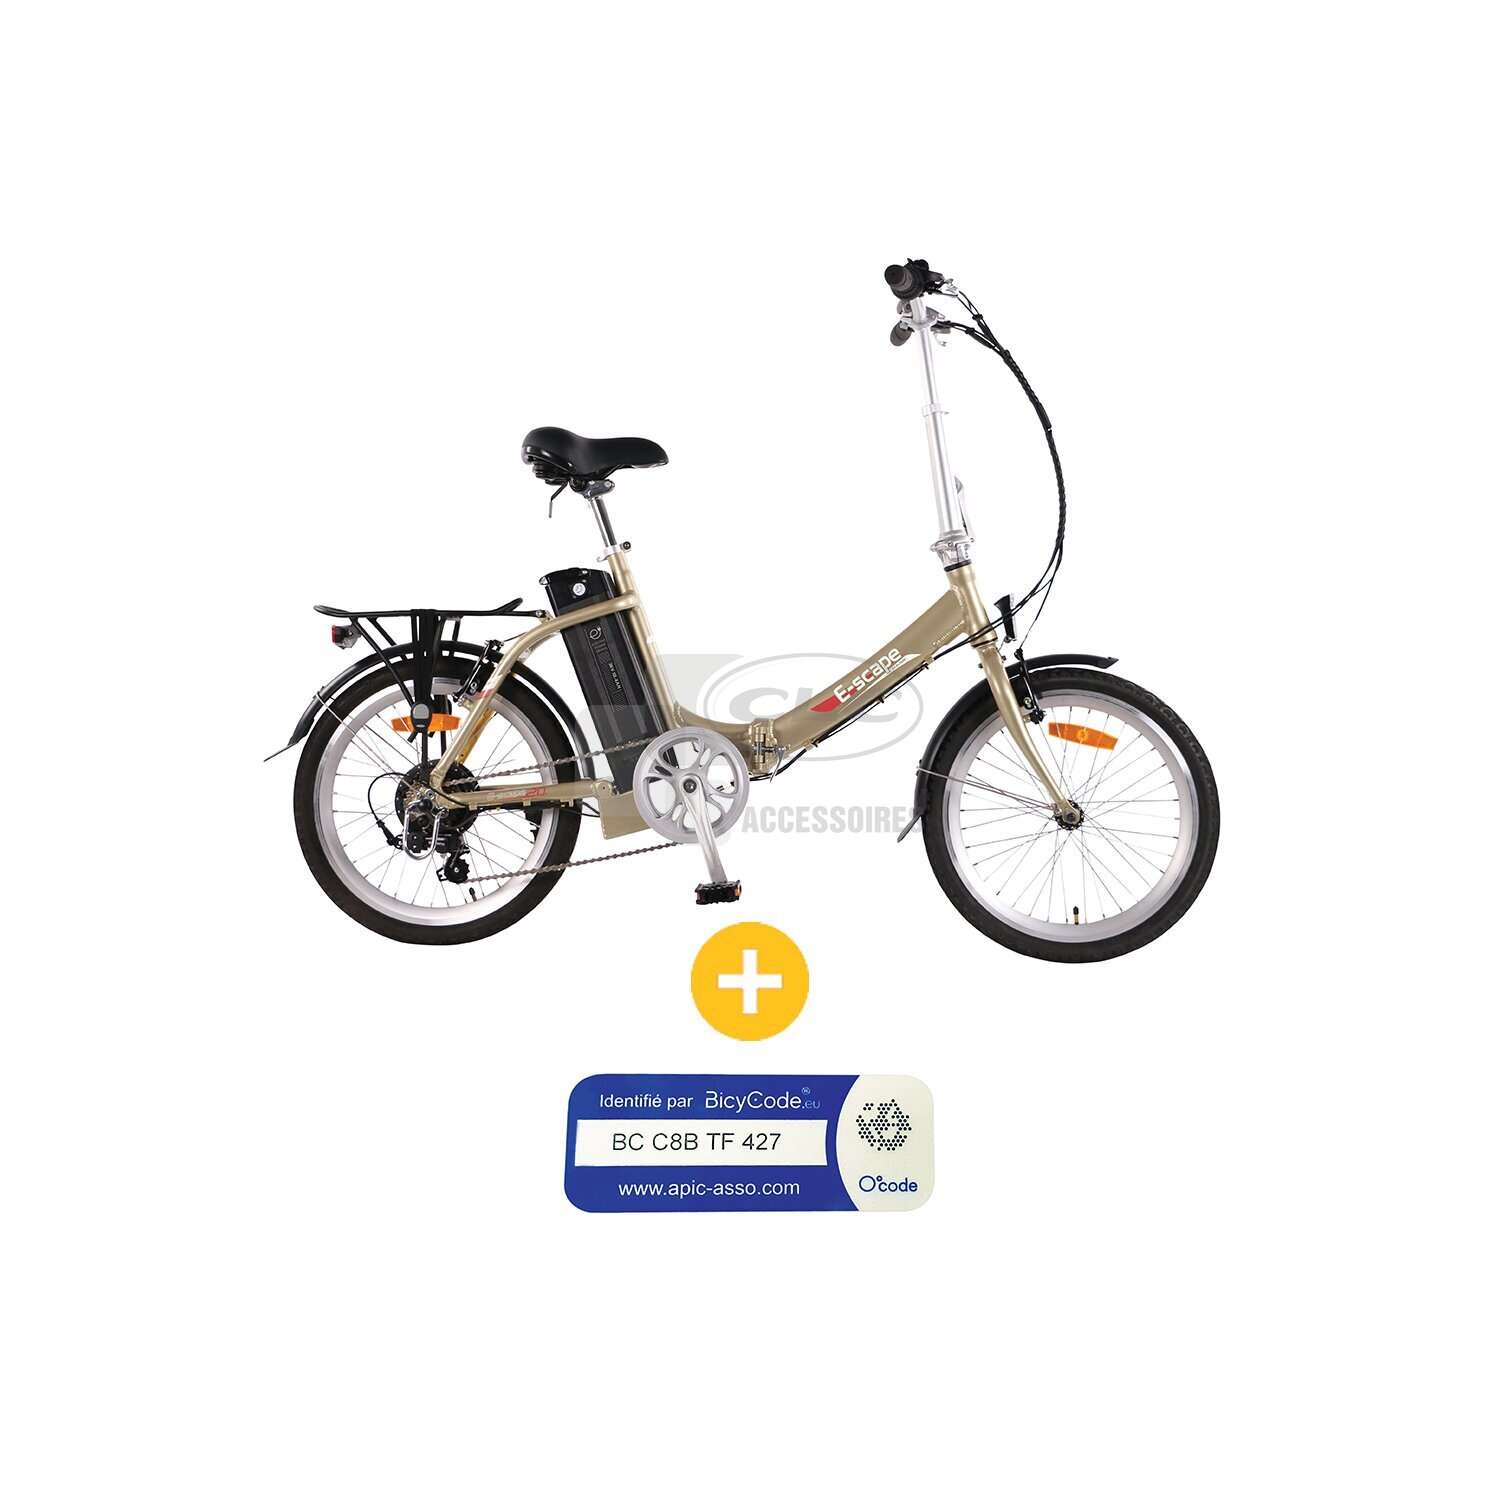 Accessoires de vélo électrique